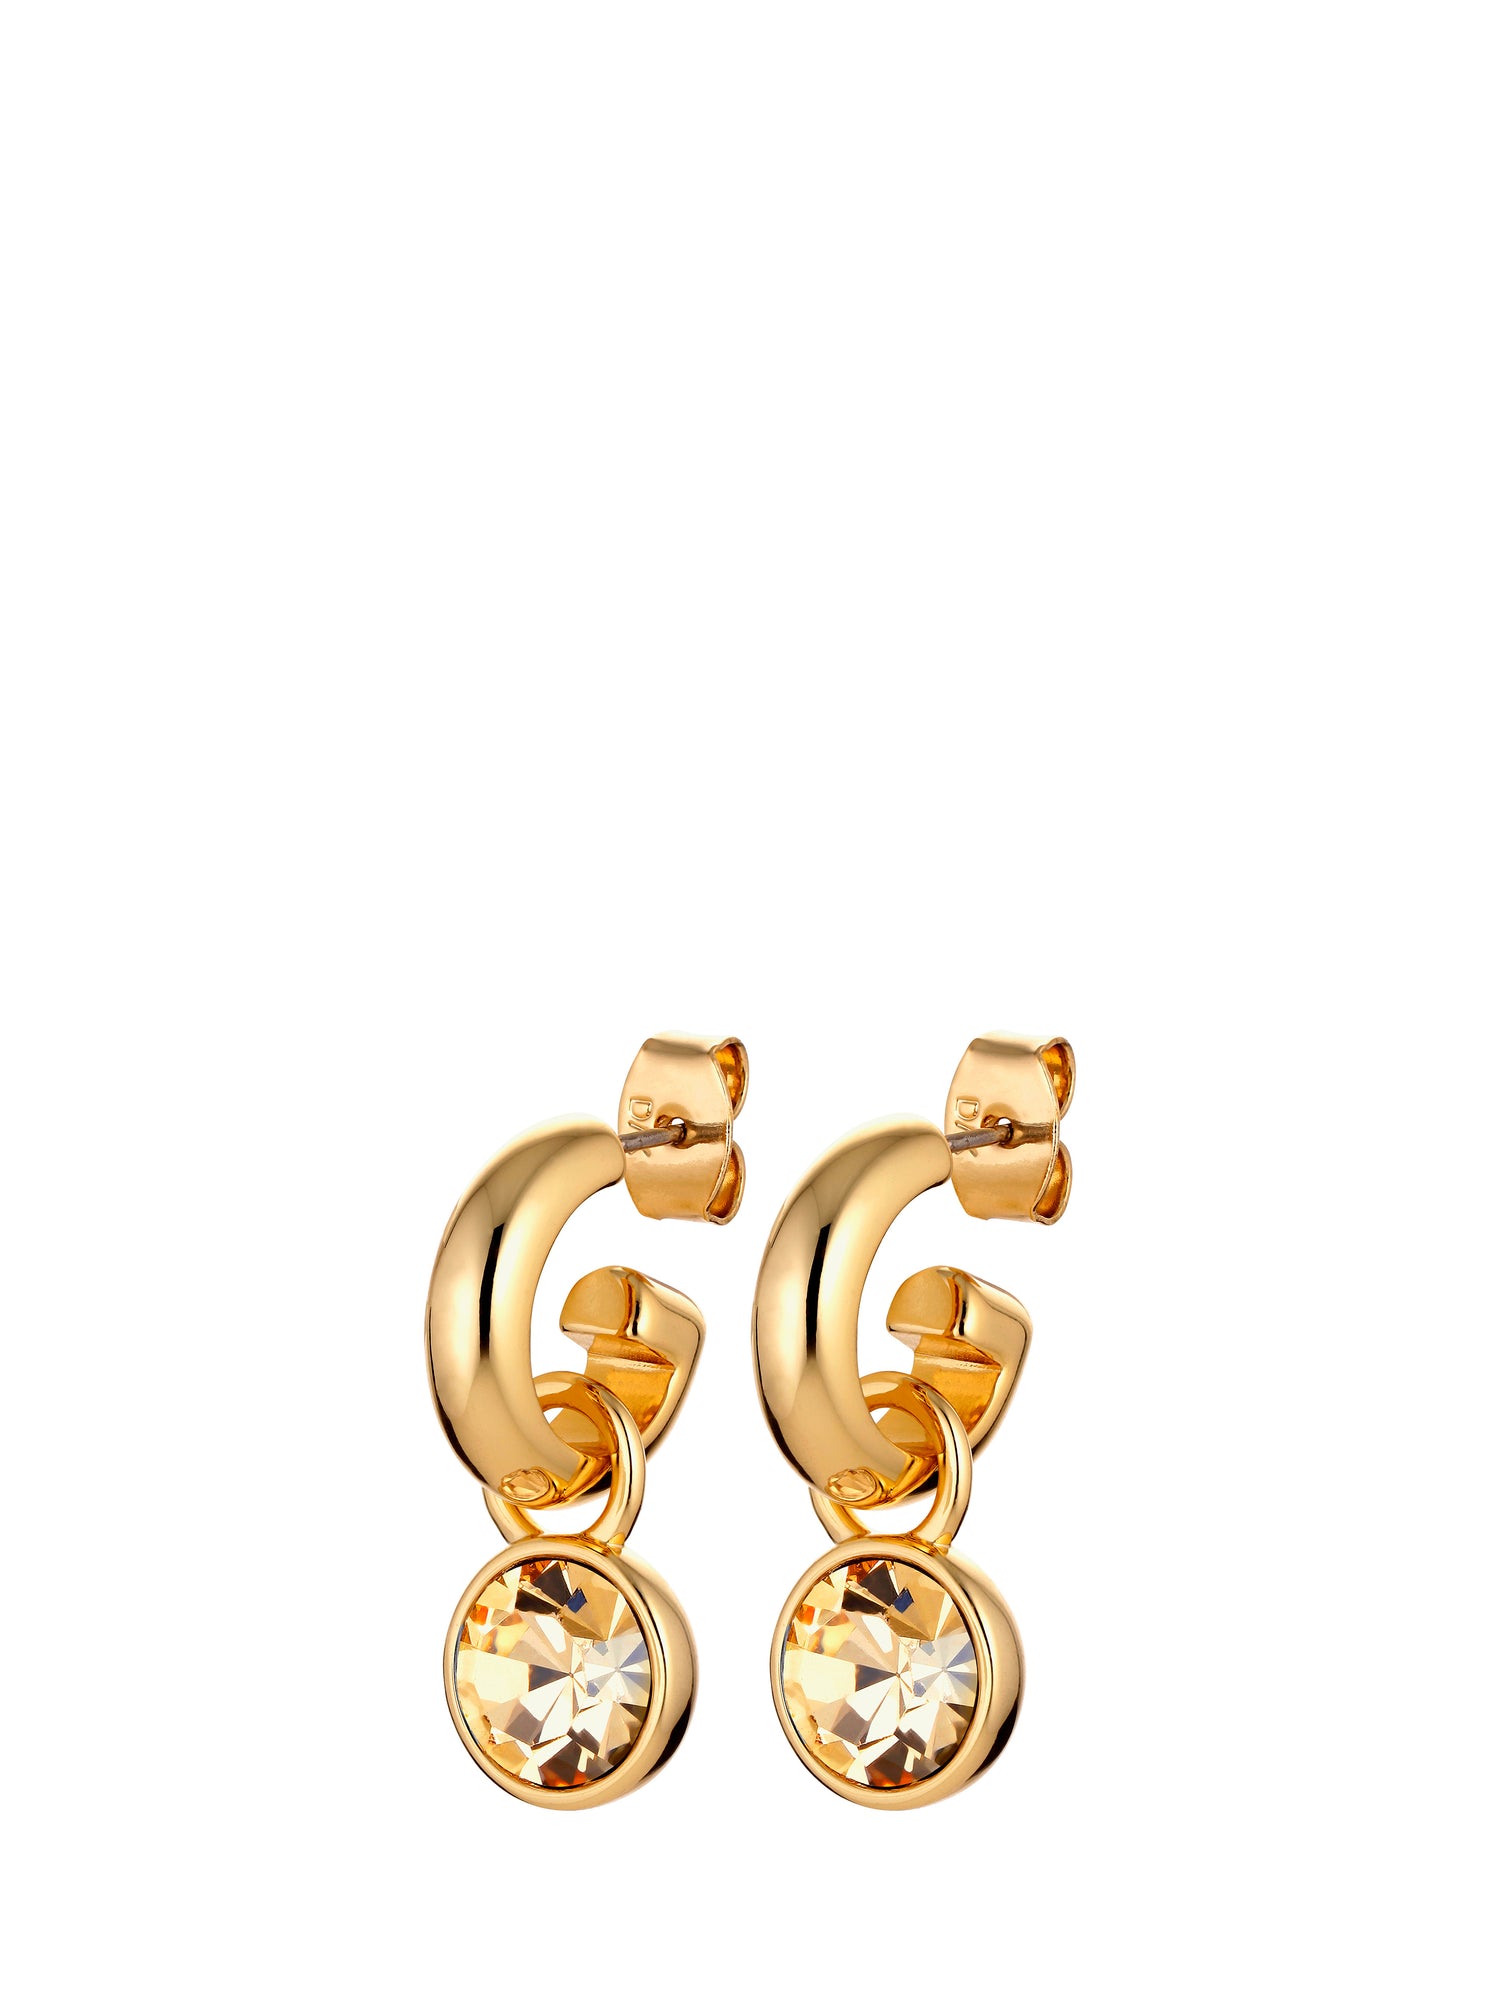 ANNA earrings, gold crystal